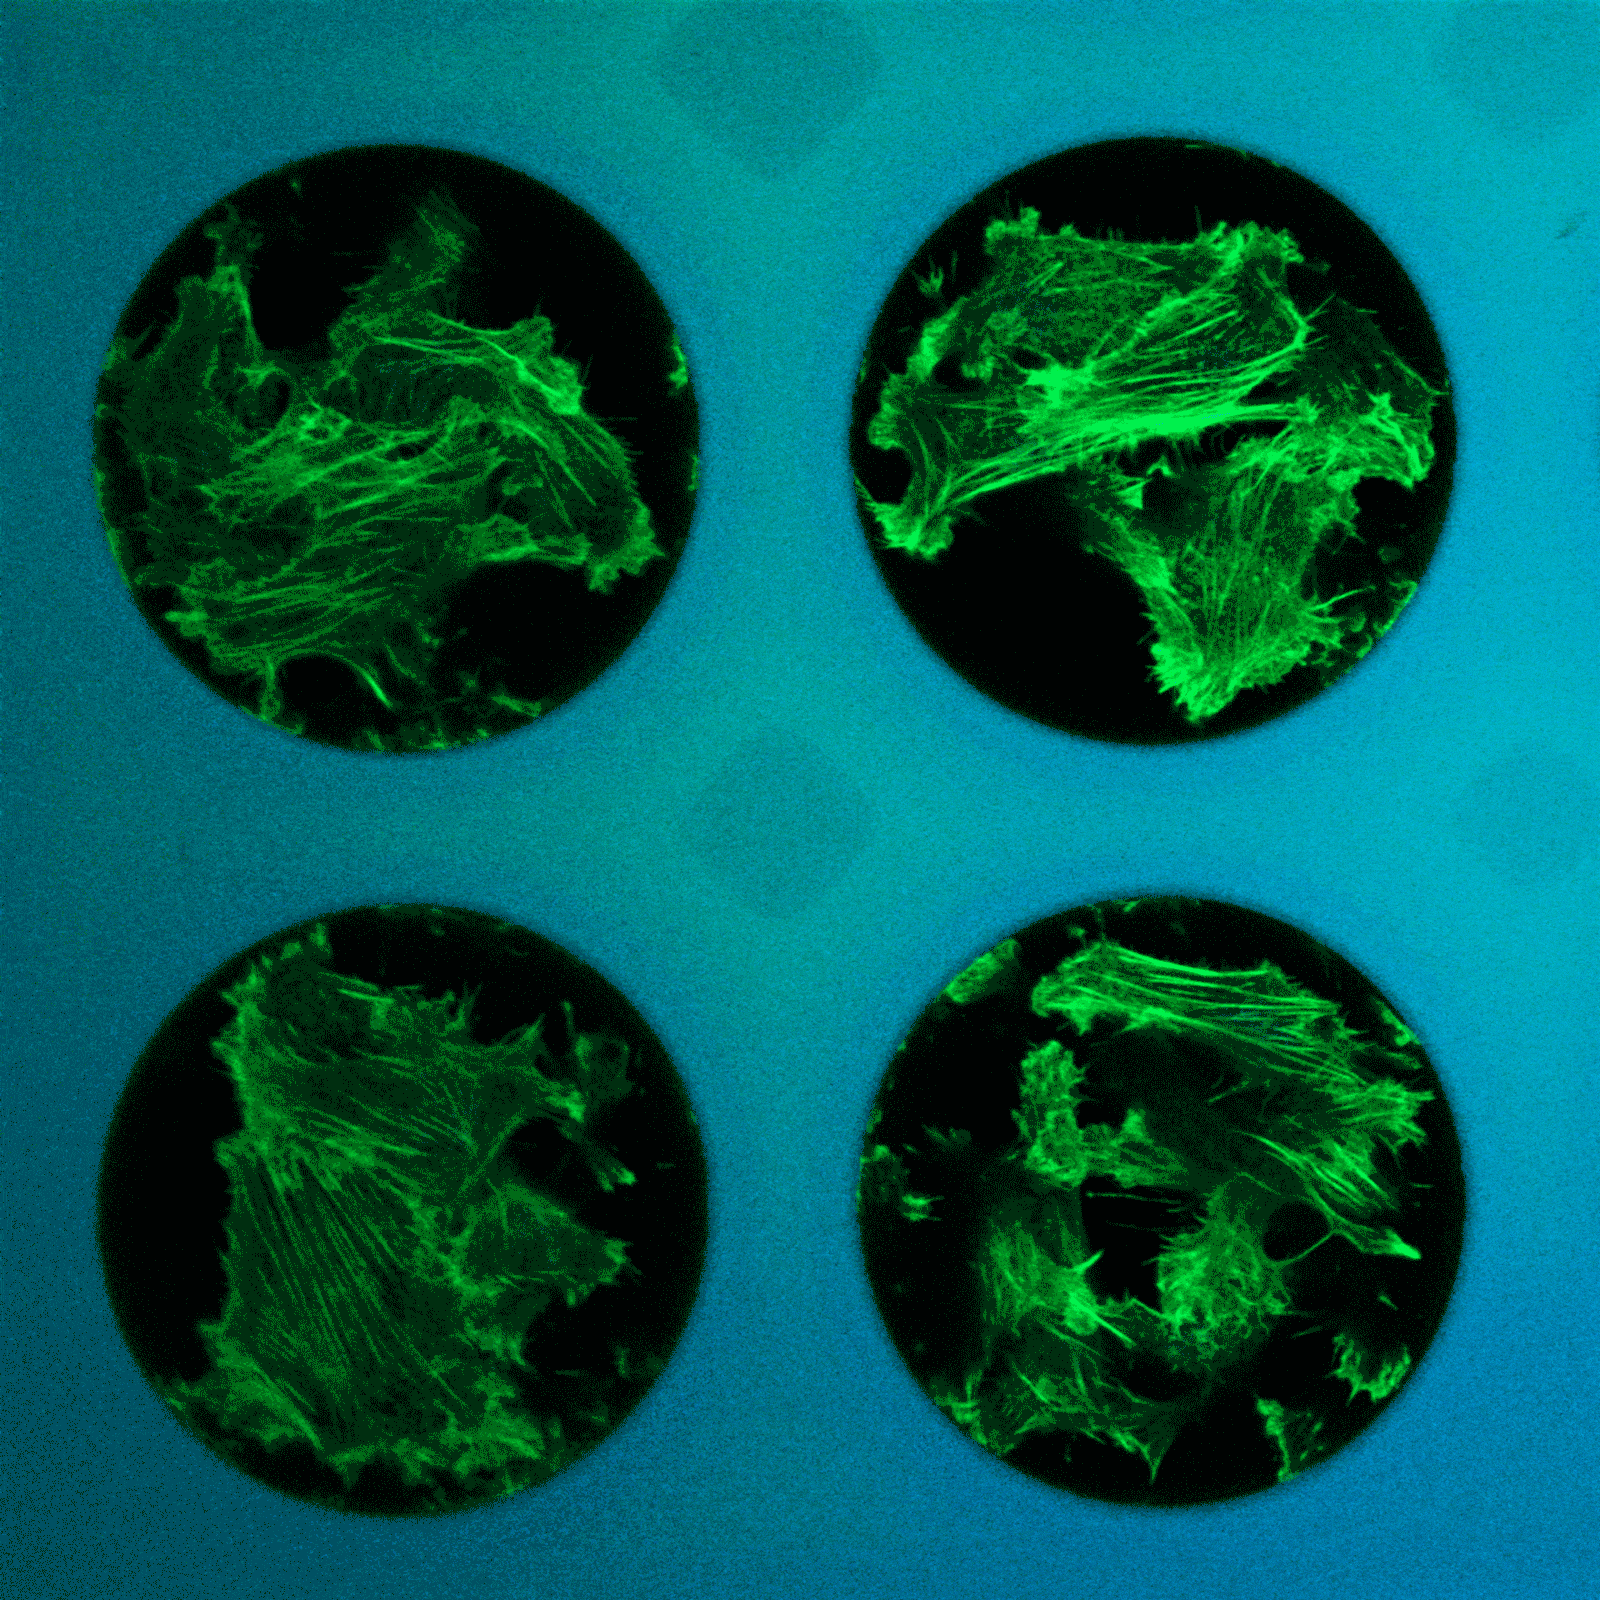 微孔内染色细胞的动态垂直图像堆叠 